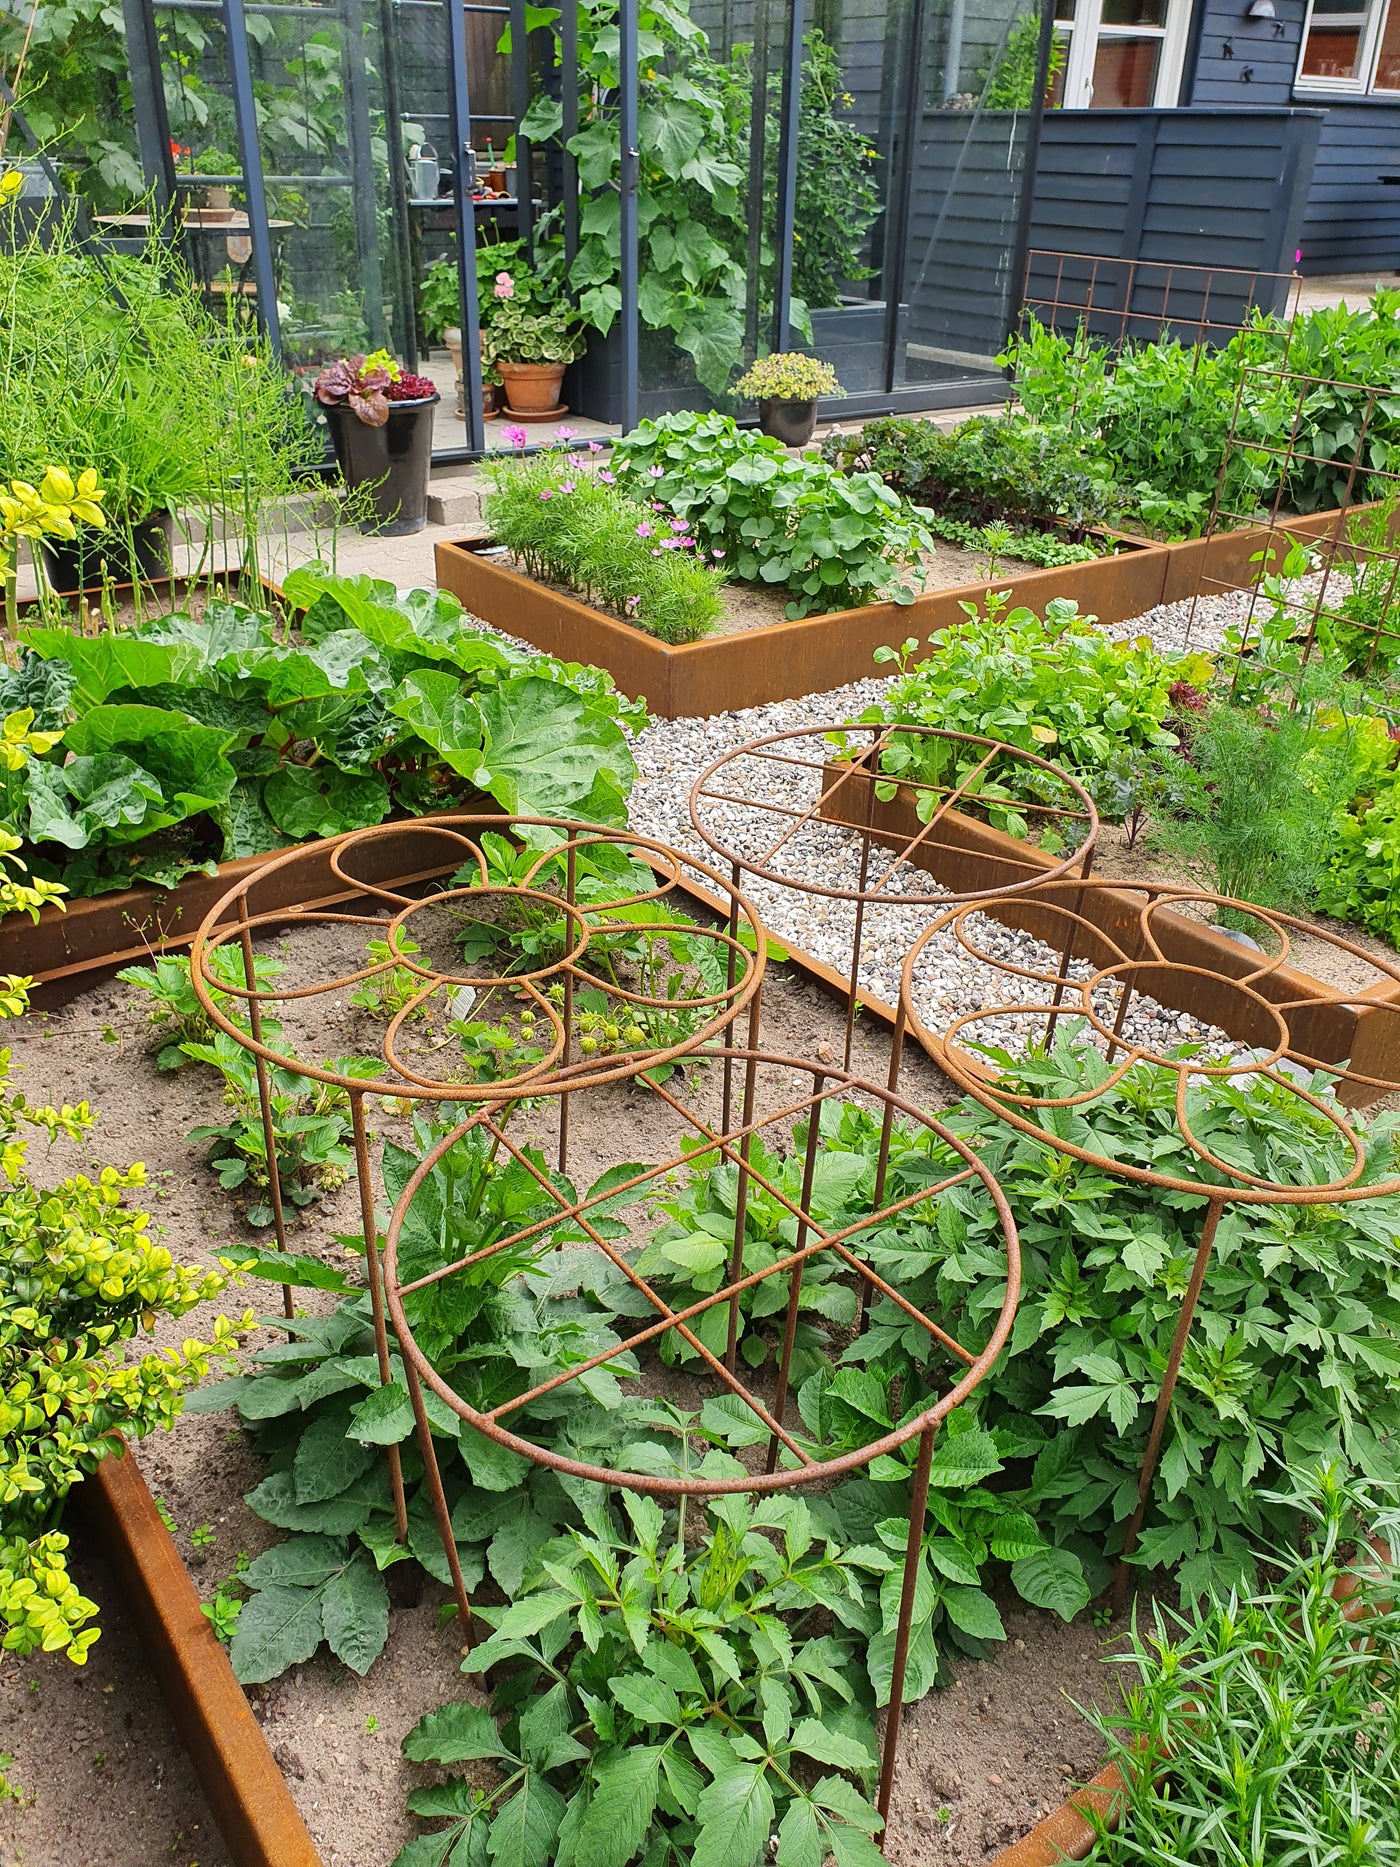 Upphöjd grönsaksträdgård modell 30cm hög